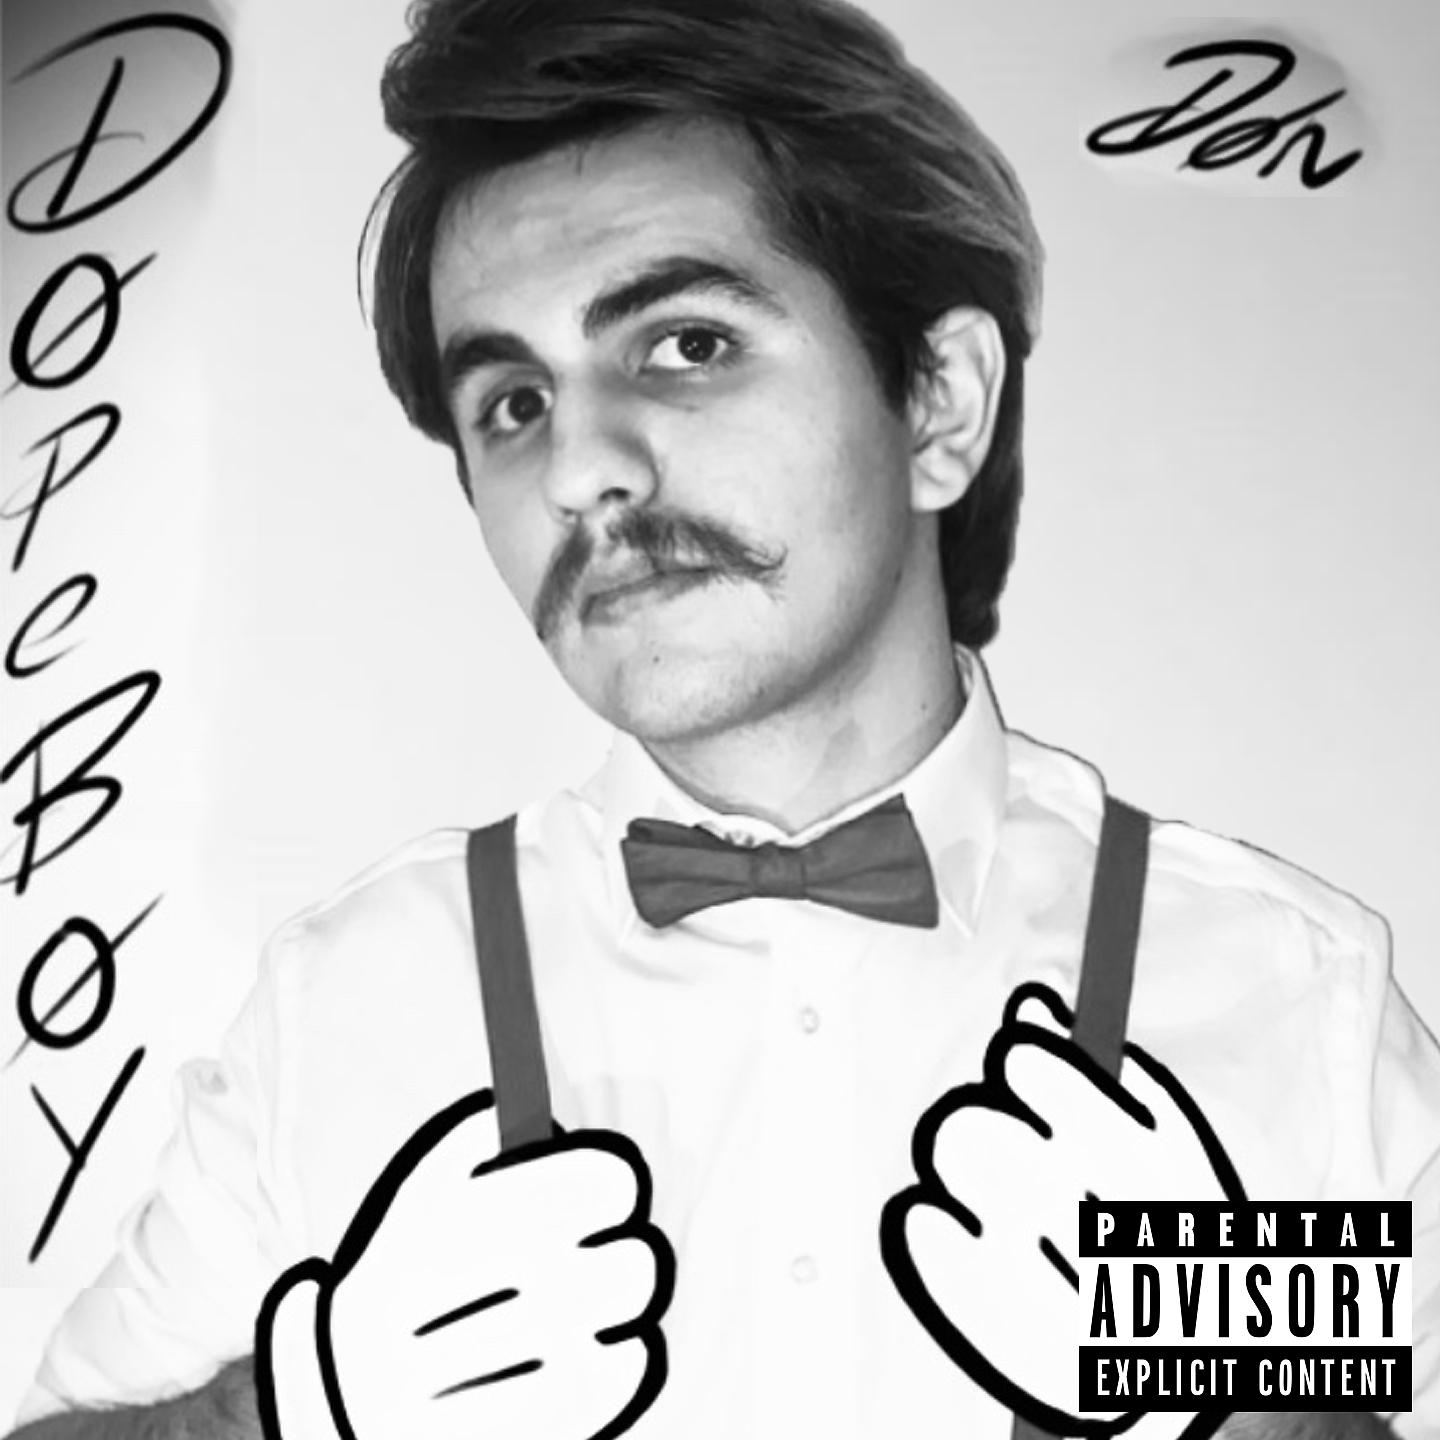 Постер альбома Dope Boy